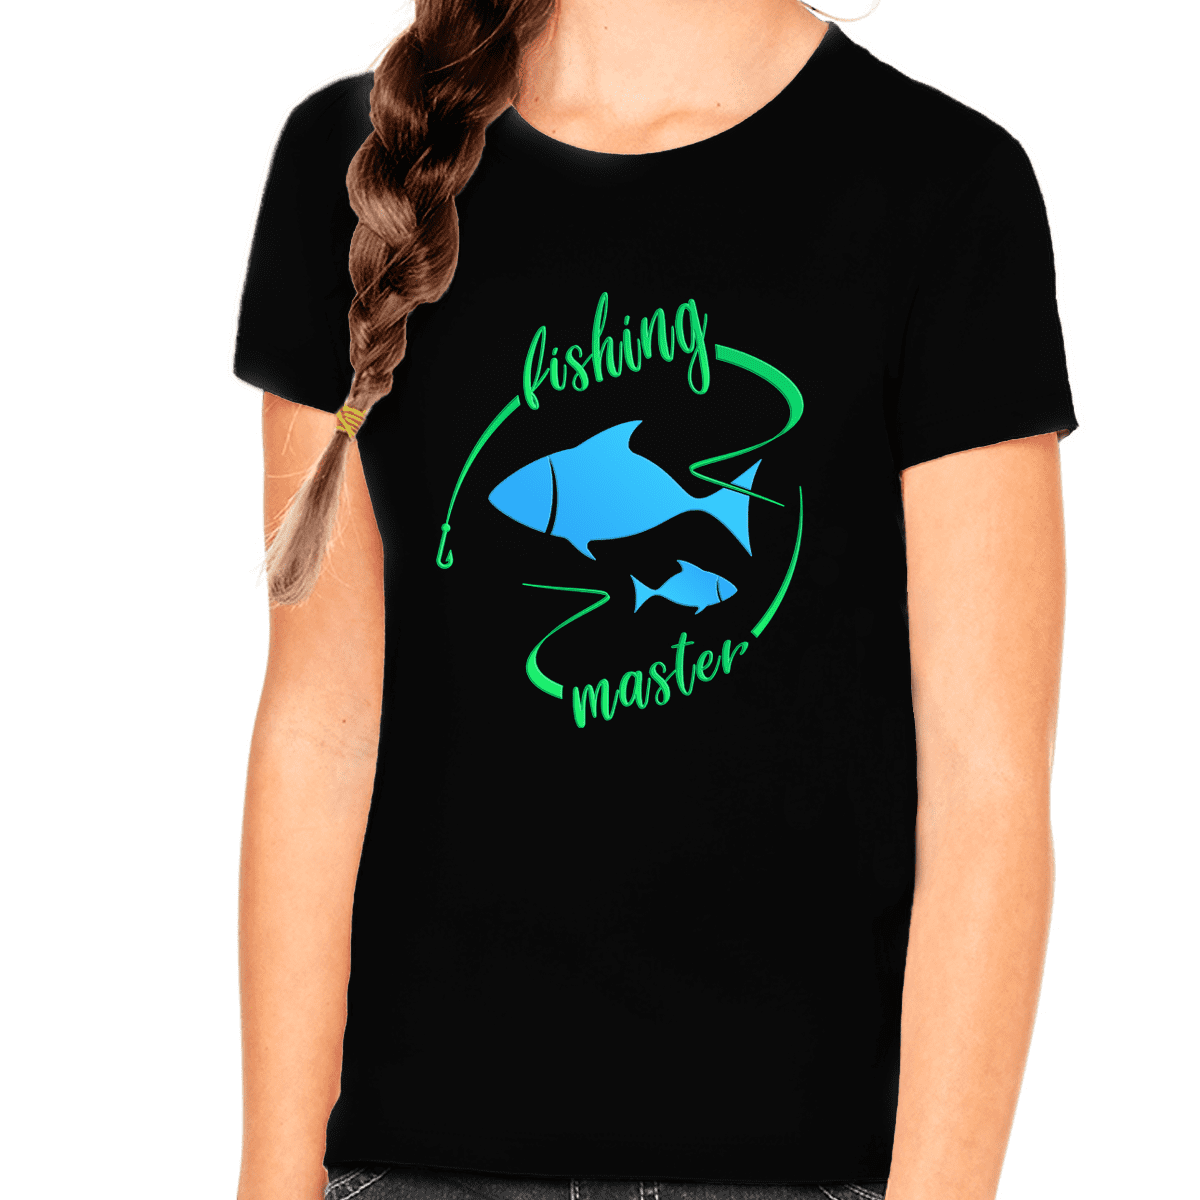 Fishing Shirts for Girls - Fishing Shirt - Kids Fishing Shirts